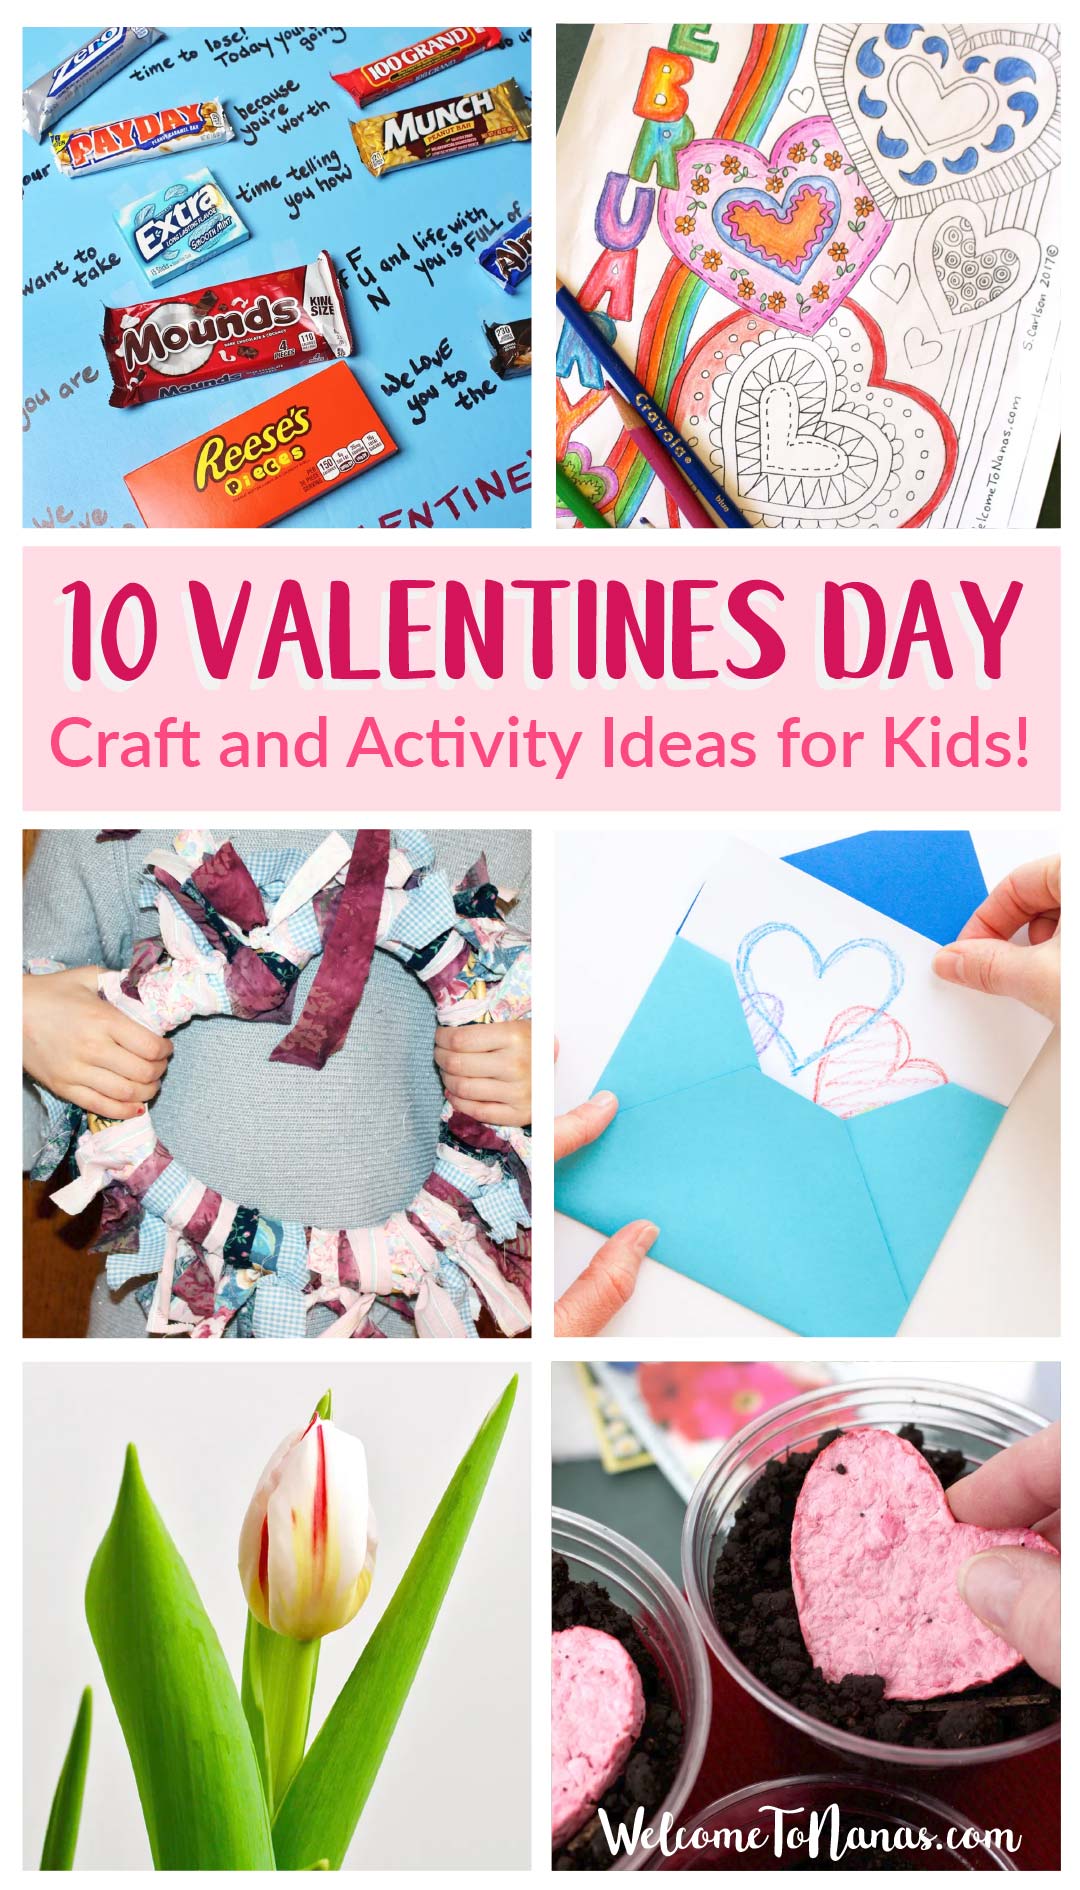 10 Valentine Craft Ideas for Kids